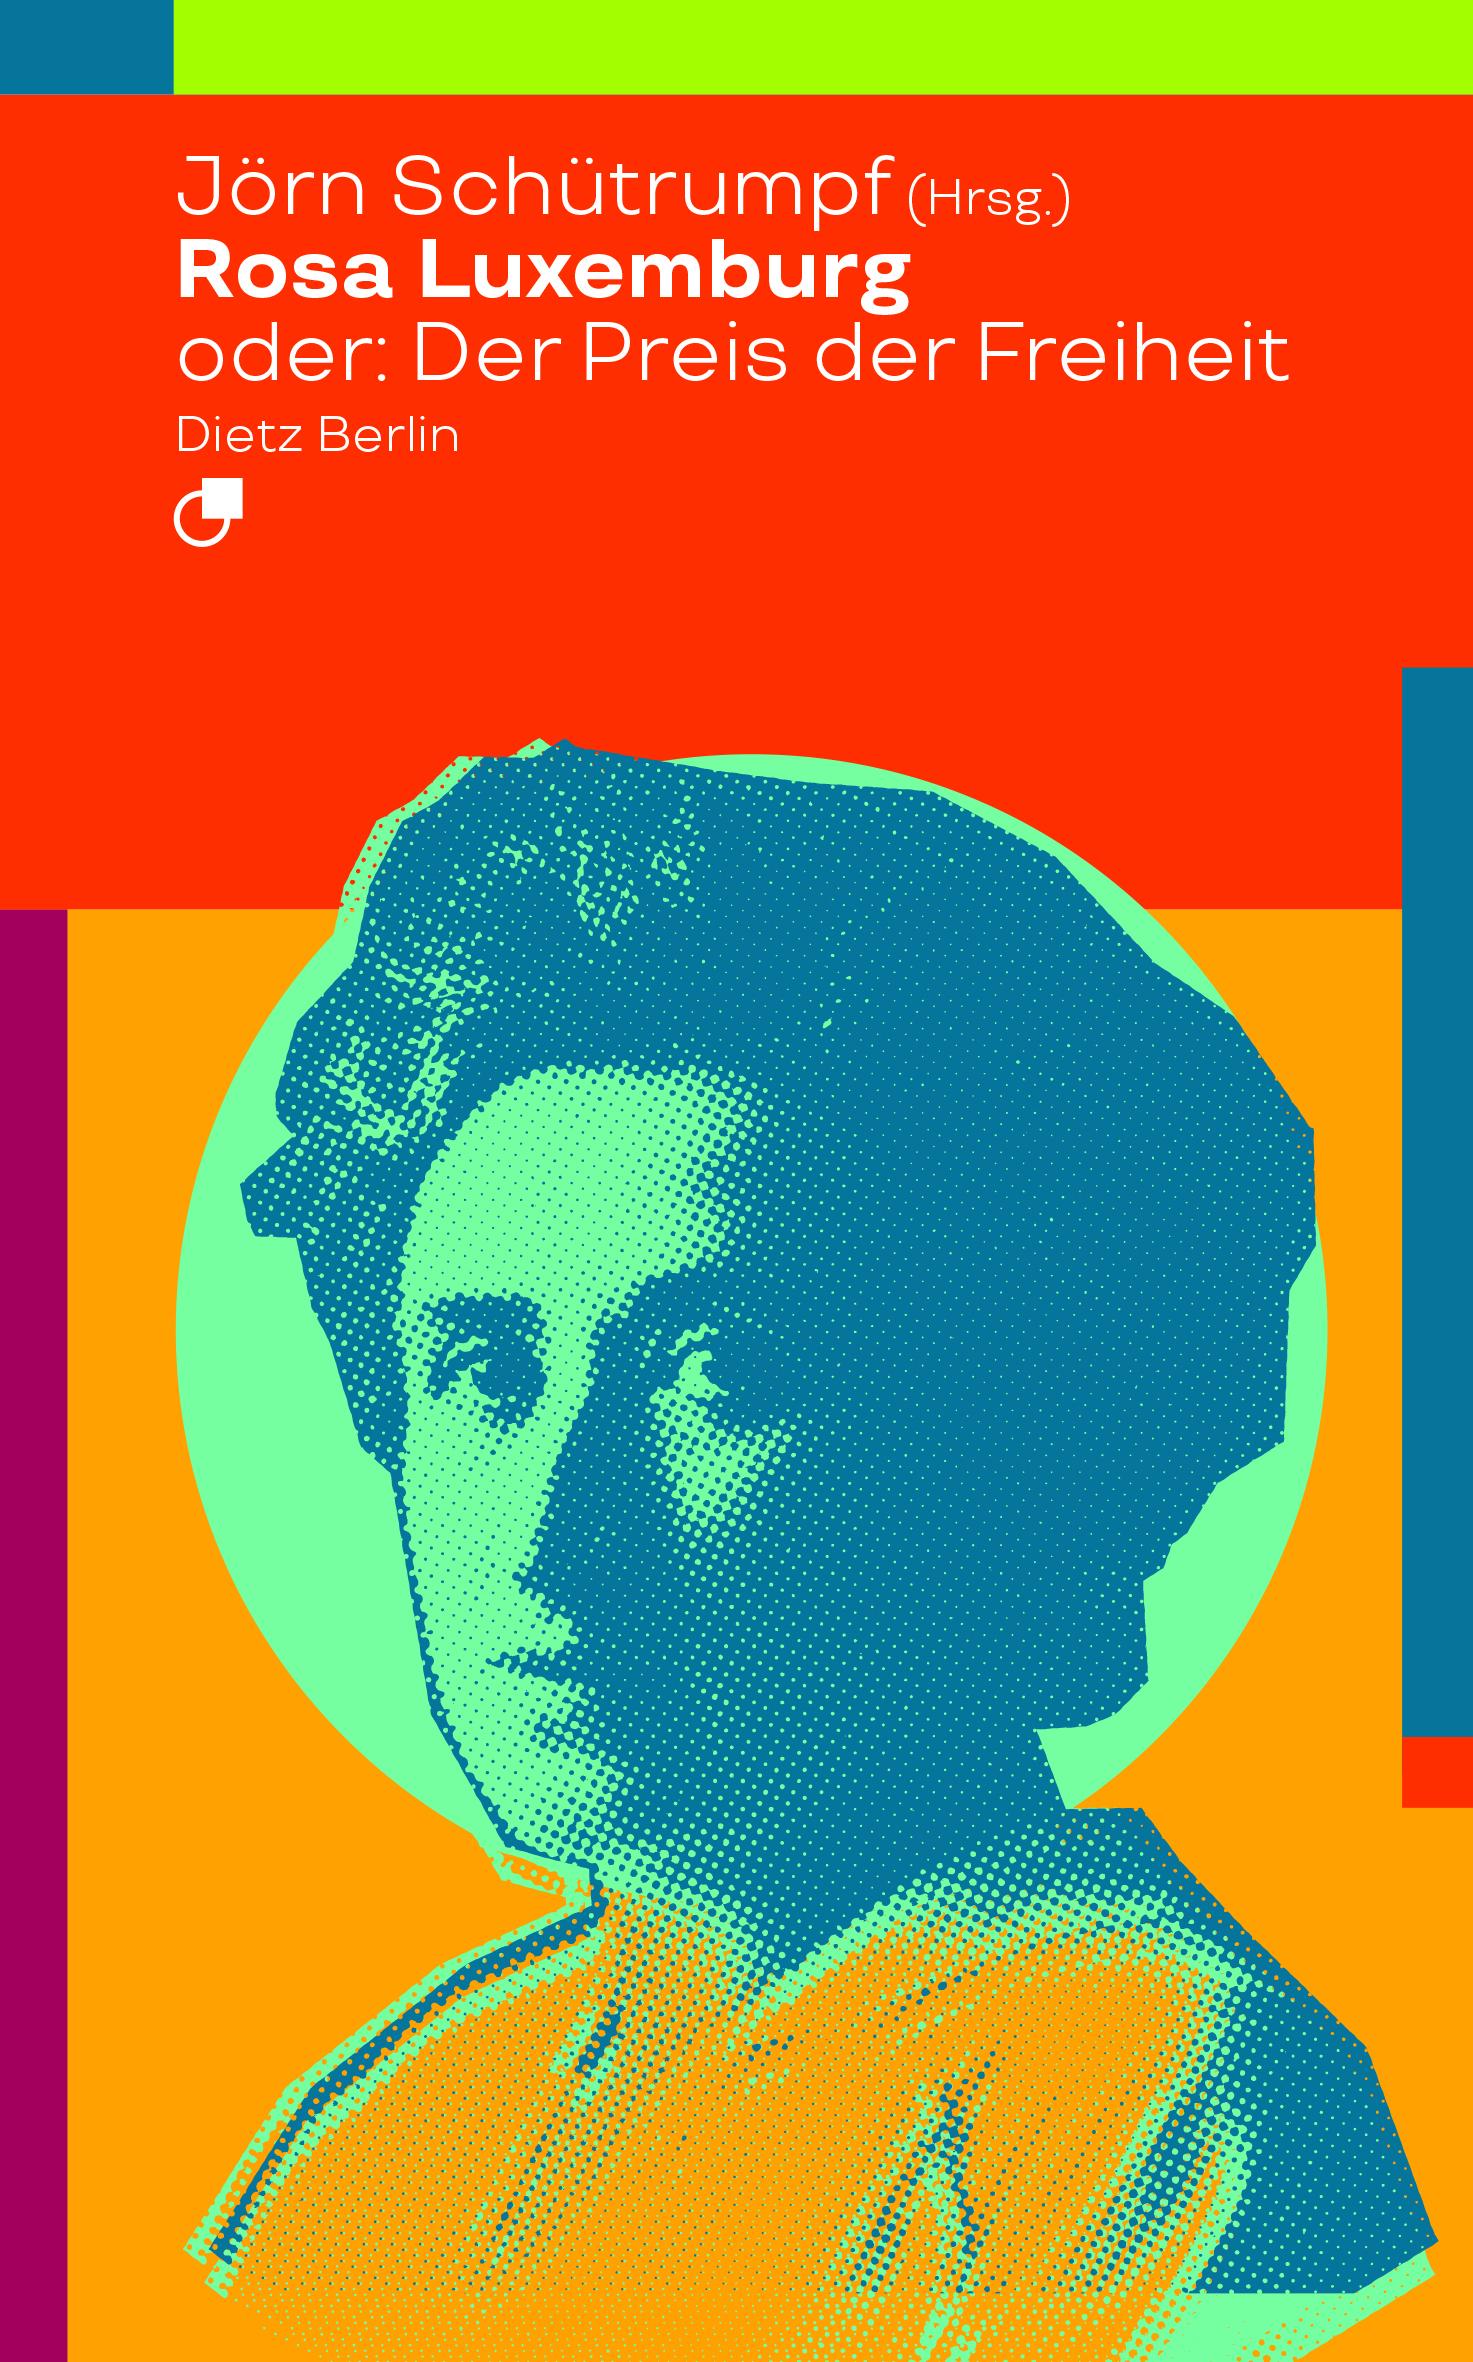 Rosa Luxemburg oder: Der Preis der Freiheit | Jörn Schütrumpf | Taschenbuch | Historische Miniaturen | Deutsch | 2018 | Dietz Verlag Berlin GmbH | EAN 9783320023515 - Schütrumpf, Jörn